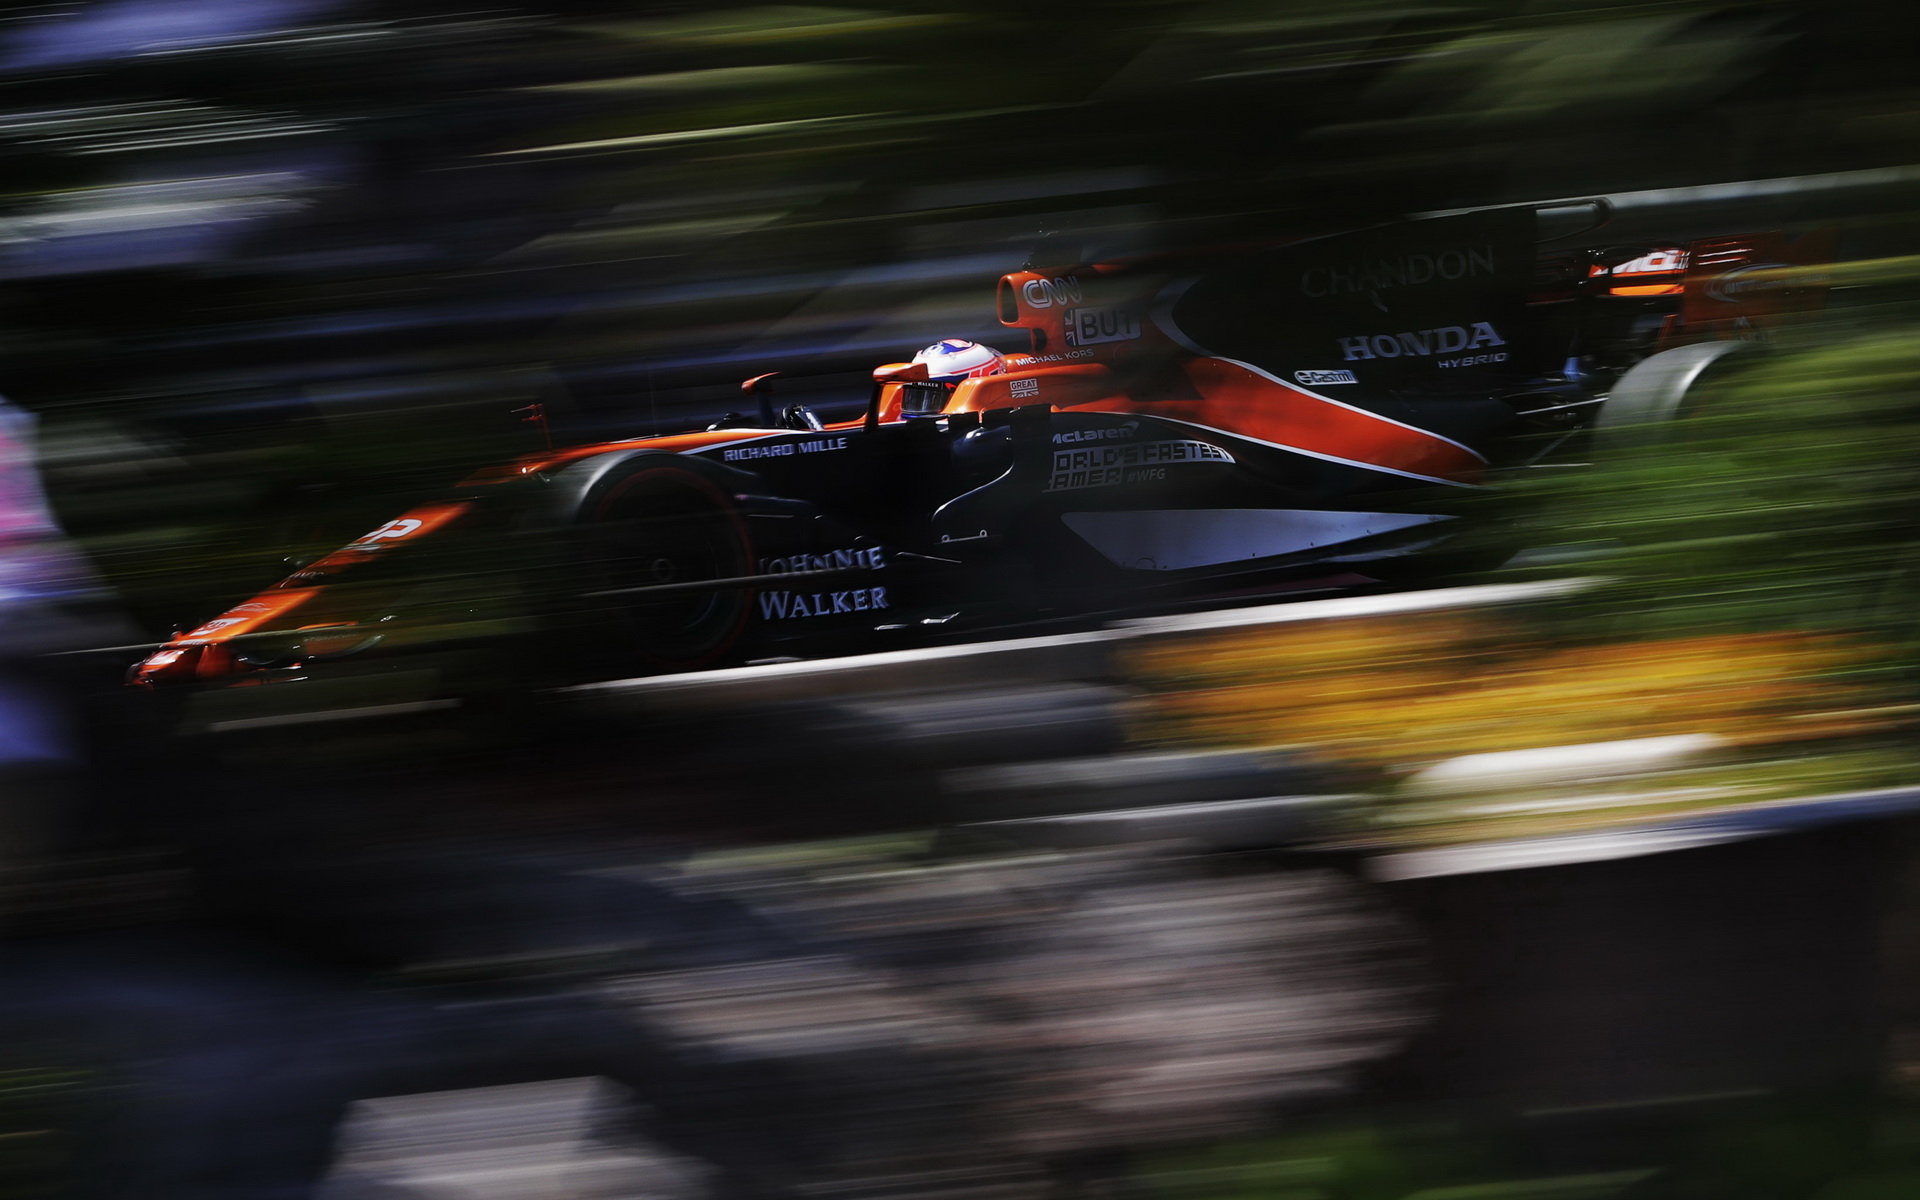 Jenson Button v závodě v Monaku